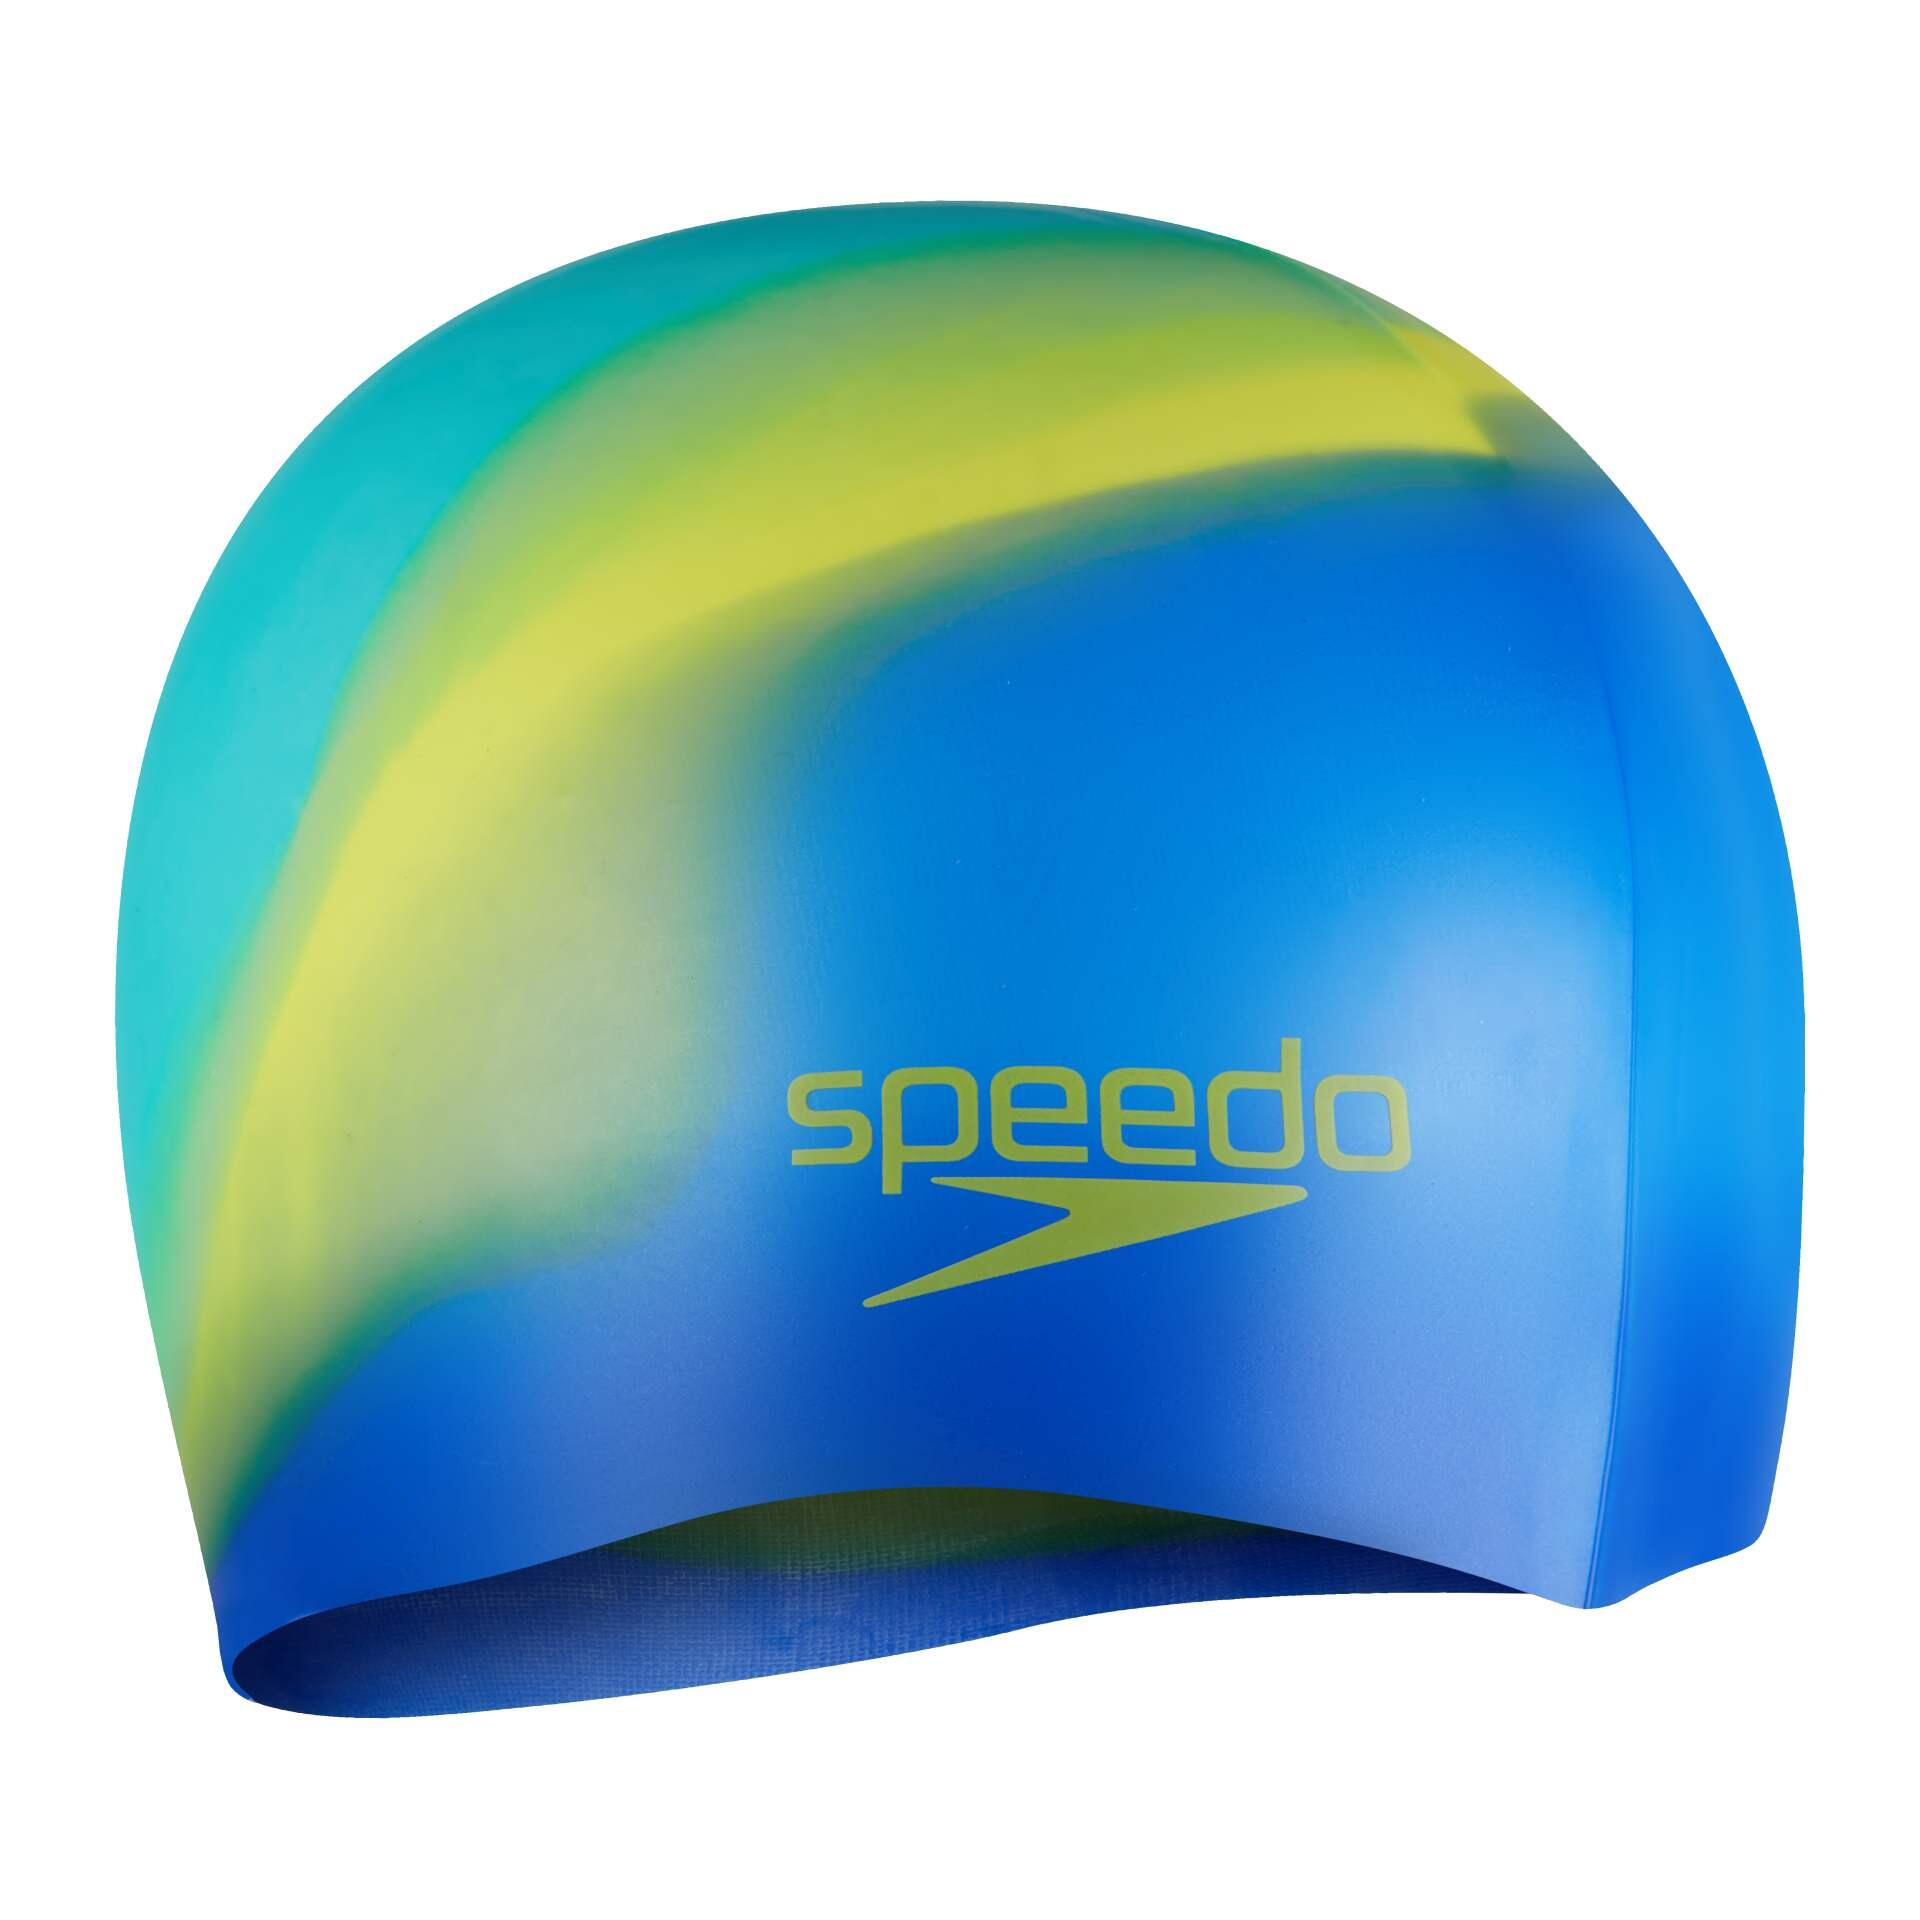 SPEEDO Speedo Junior Plain Multi-Colour Silicone Cap - Blue/Green